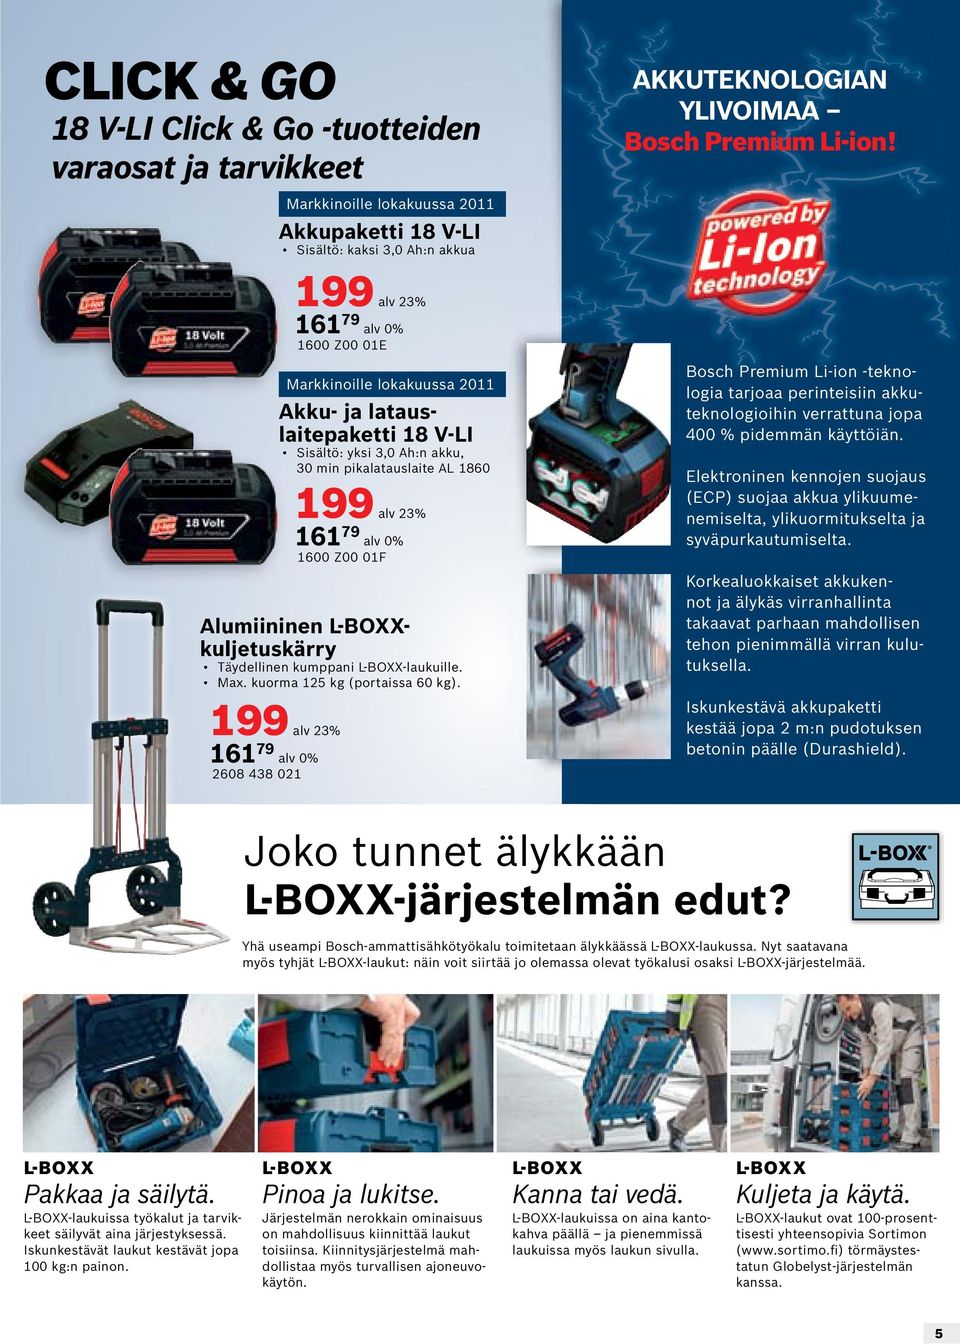 L-BOXXkuljetuskärry Täydellinen kumppani L-BOXX-laukuille. Max. kuorma 12 kg (portaissa 60 kg).